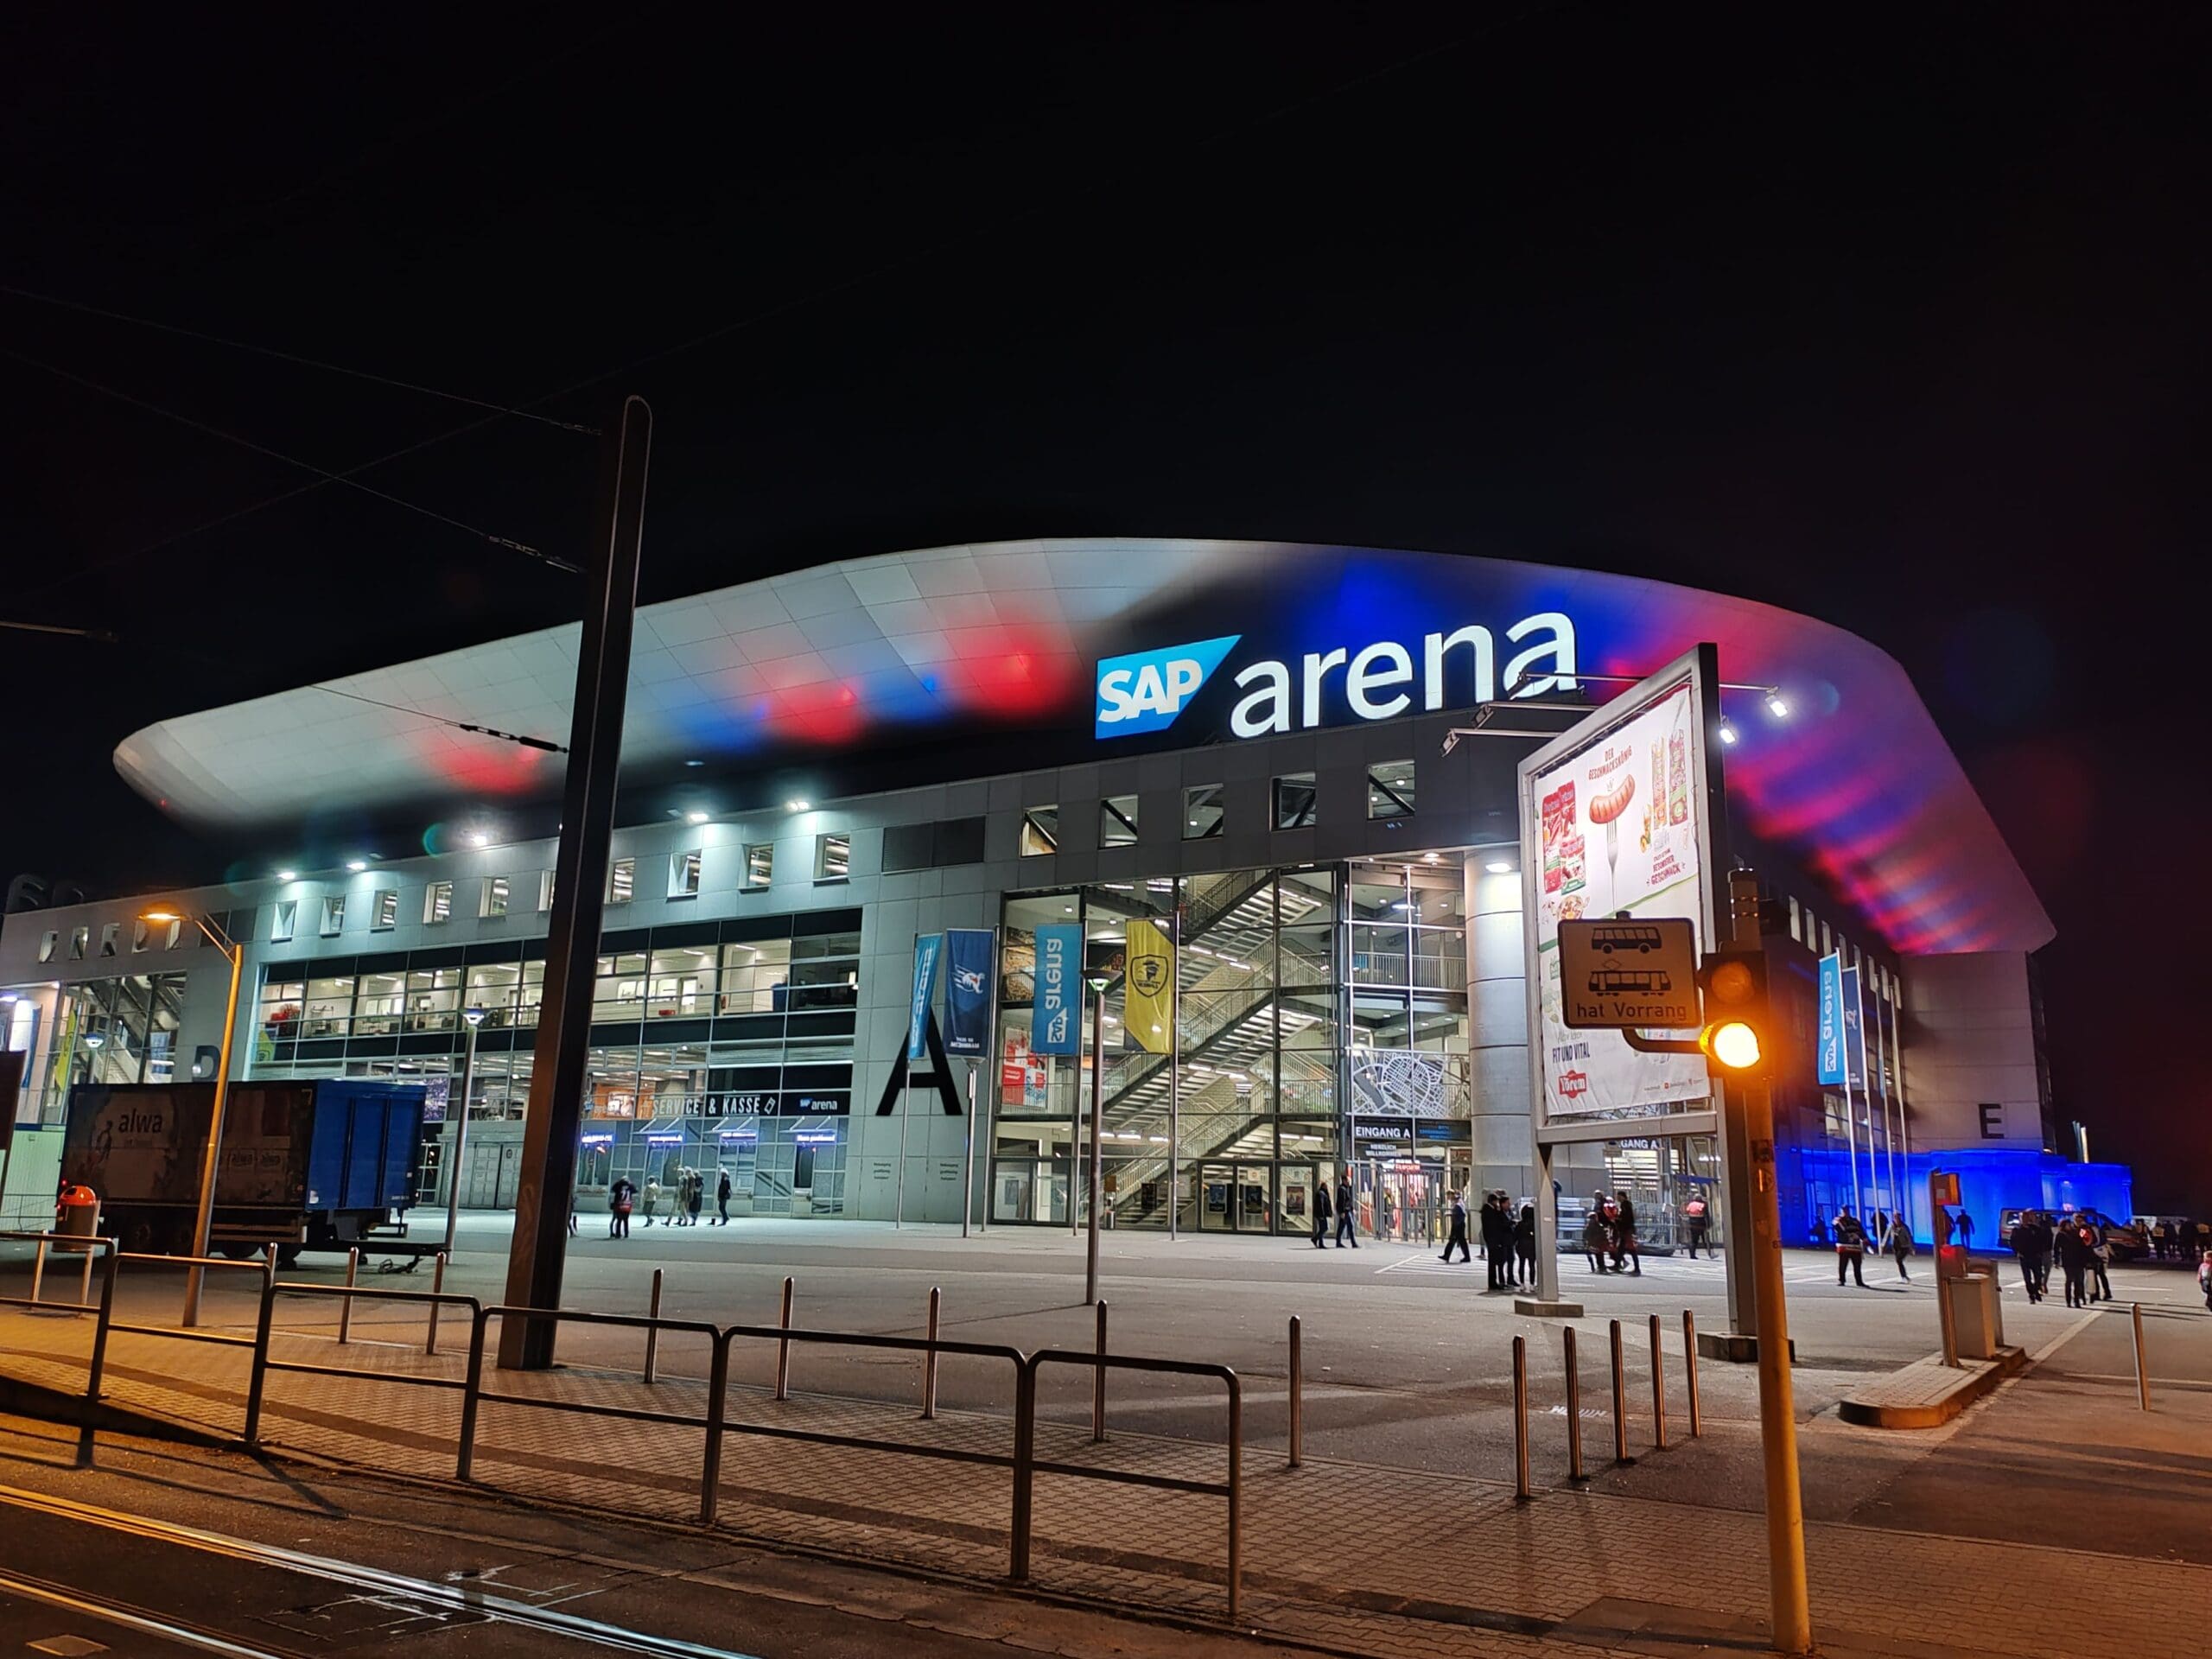 Die SAP Arena leuchtet nach einer Veranstaltung in den passenden Farben, hier blau und rot für die Adler Mannheim. © Stefanie Afisa